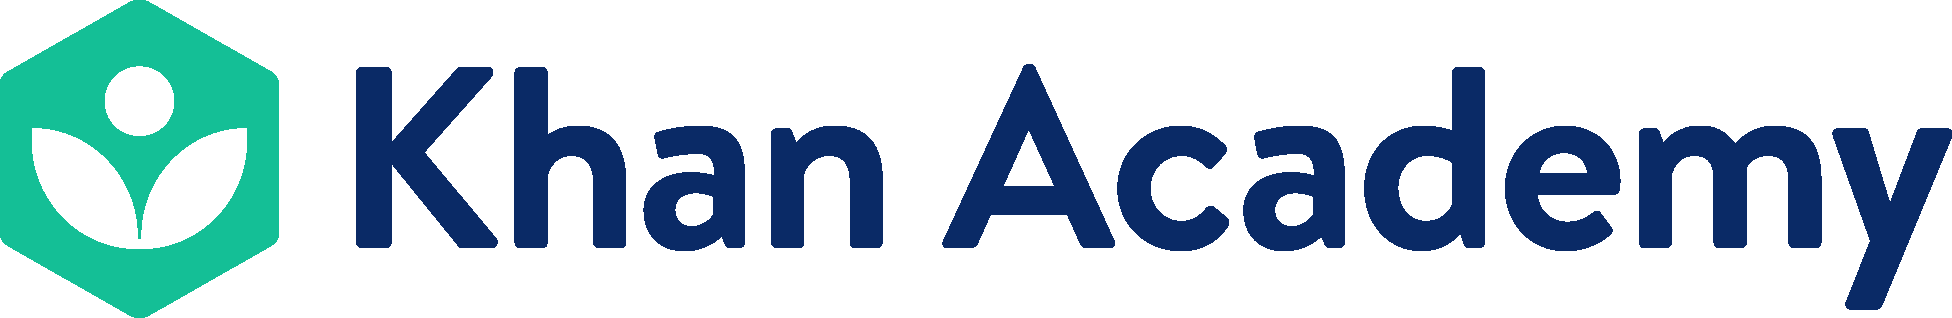 Khan Academy Logo png